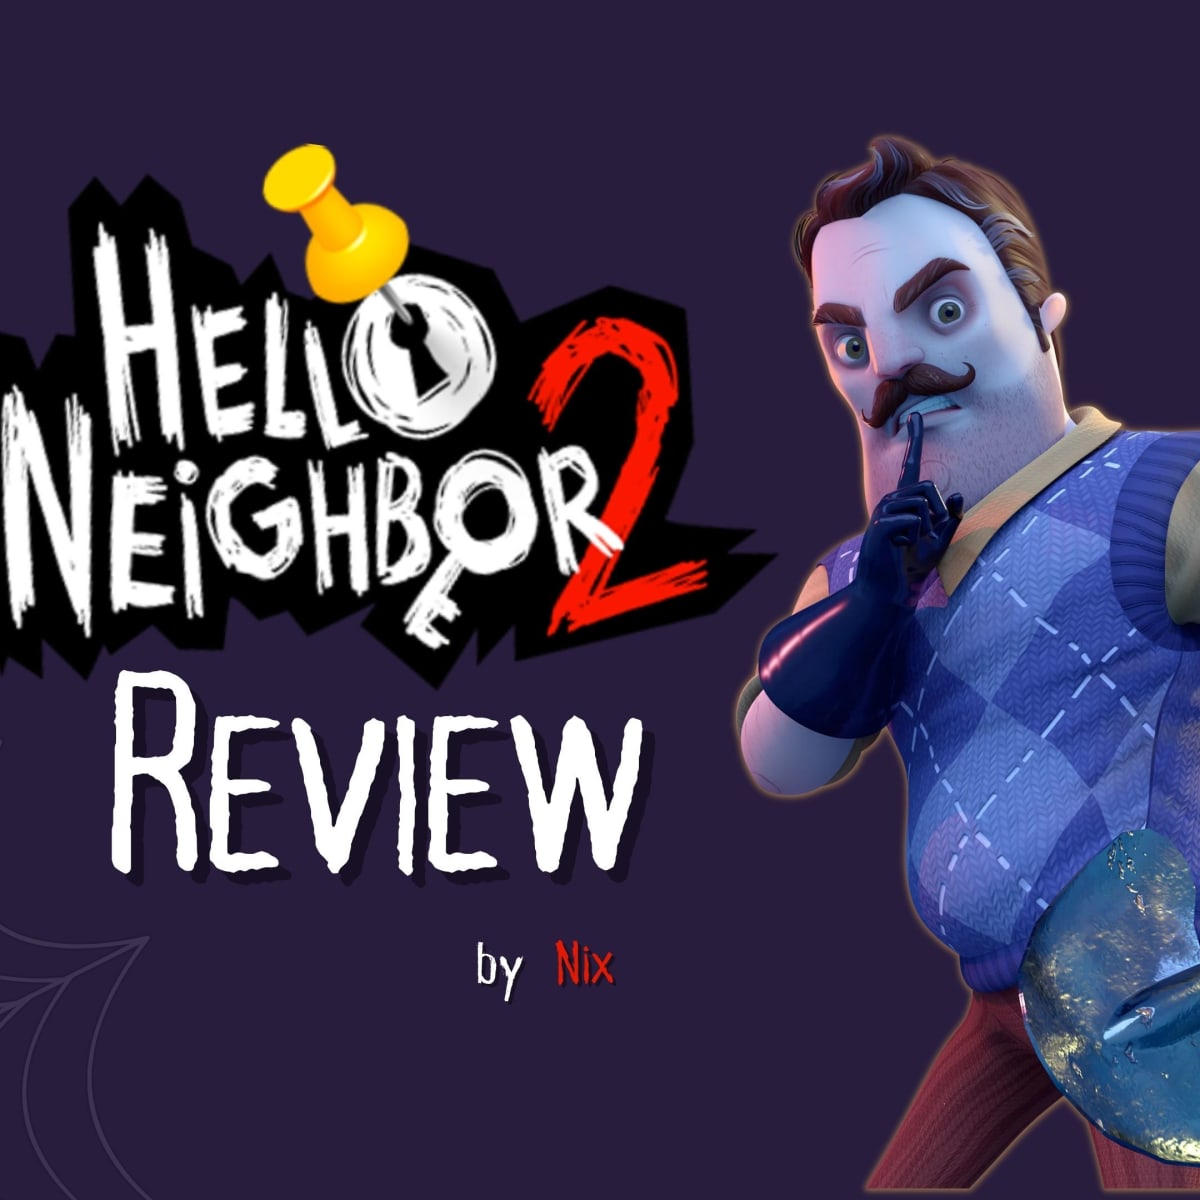 Secret Neighbor Game Review